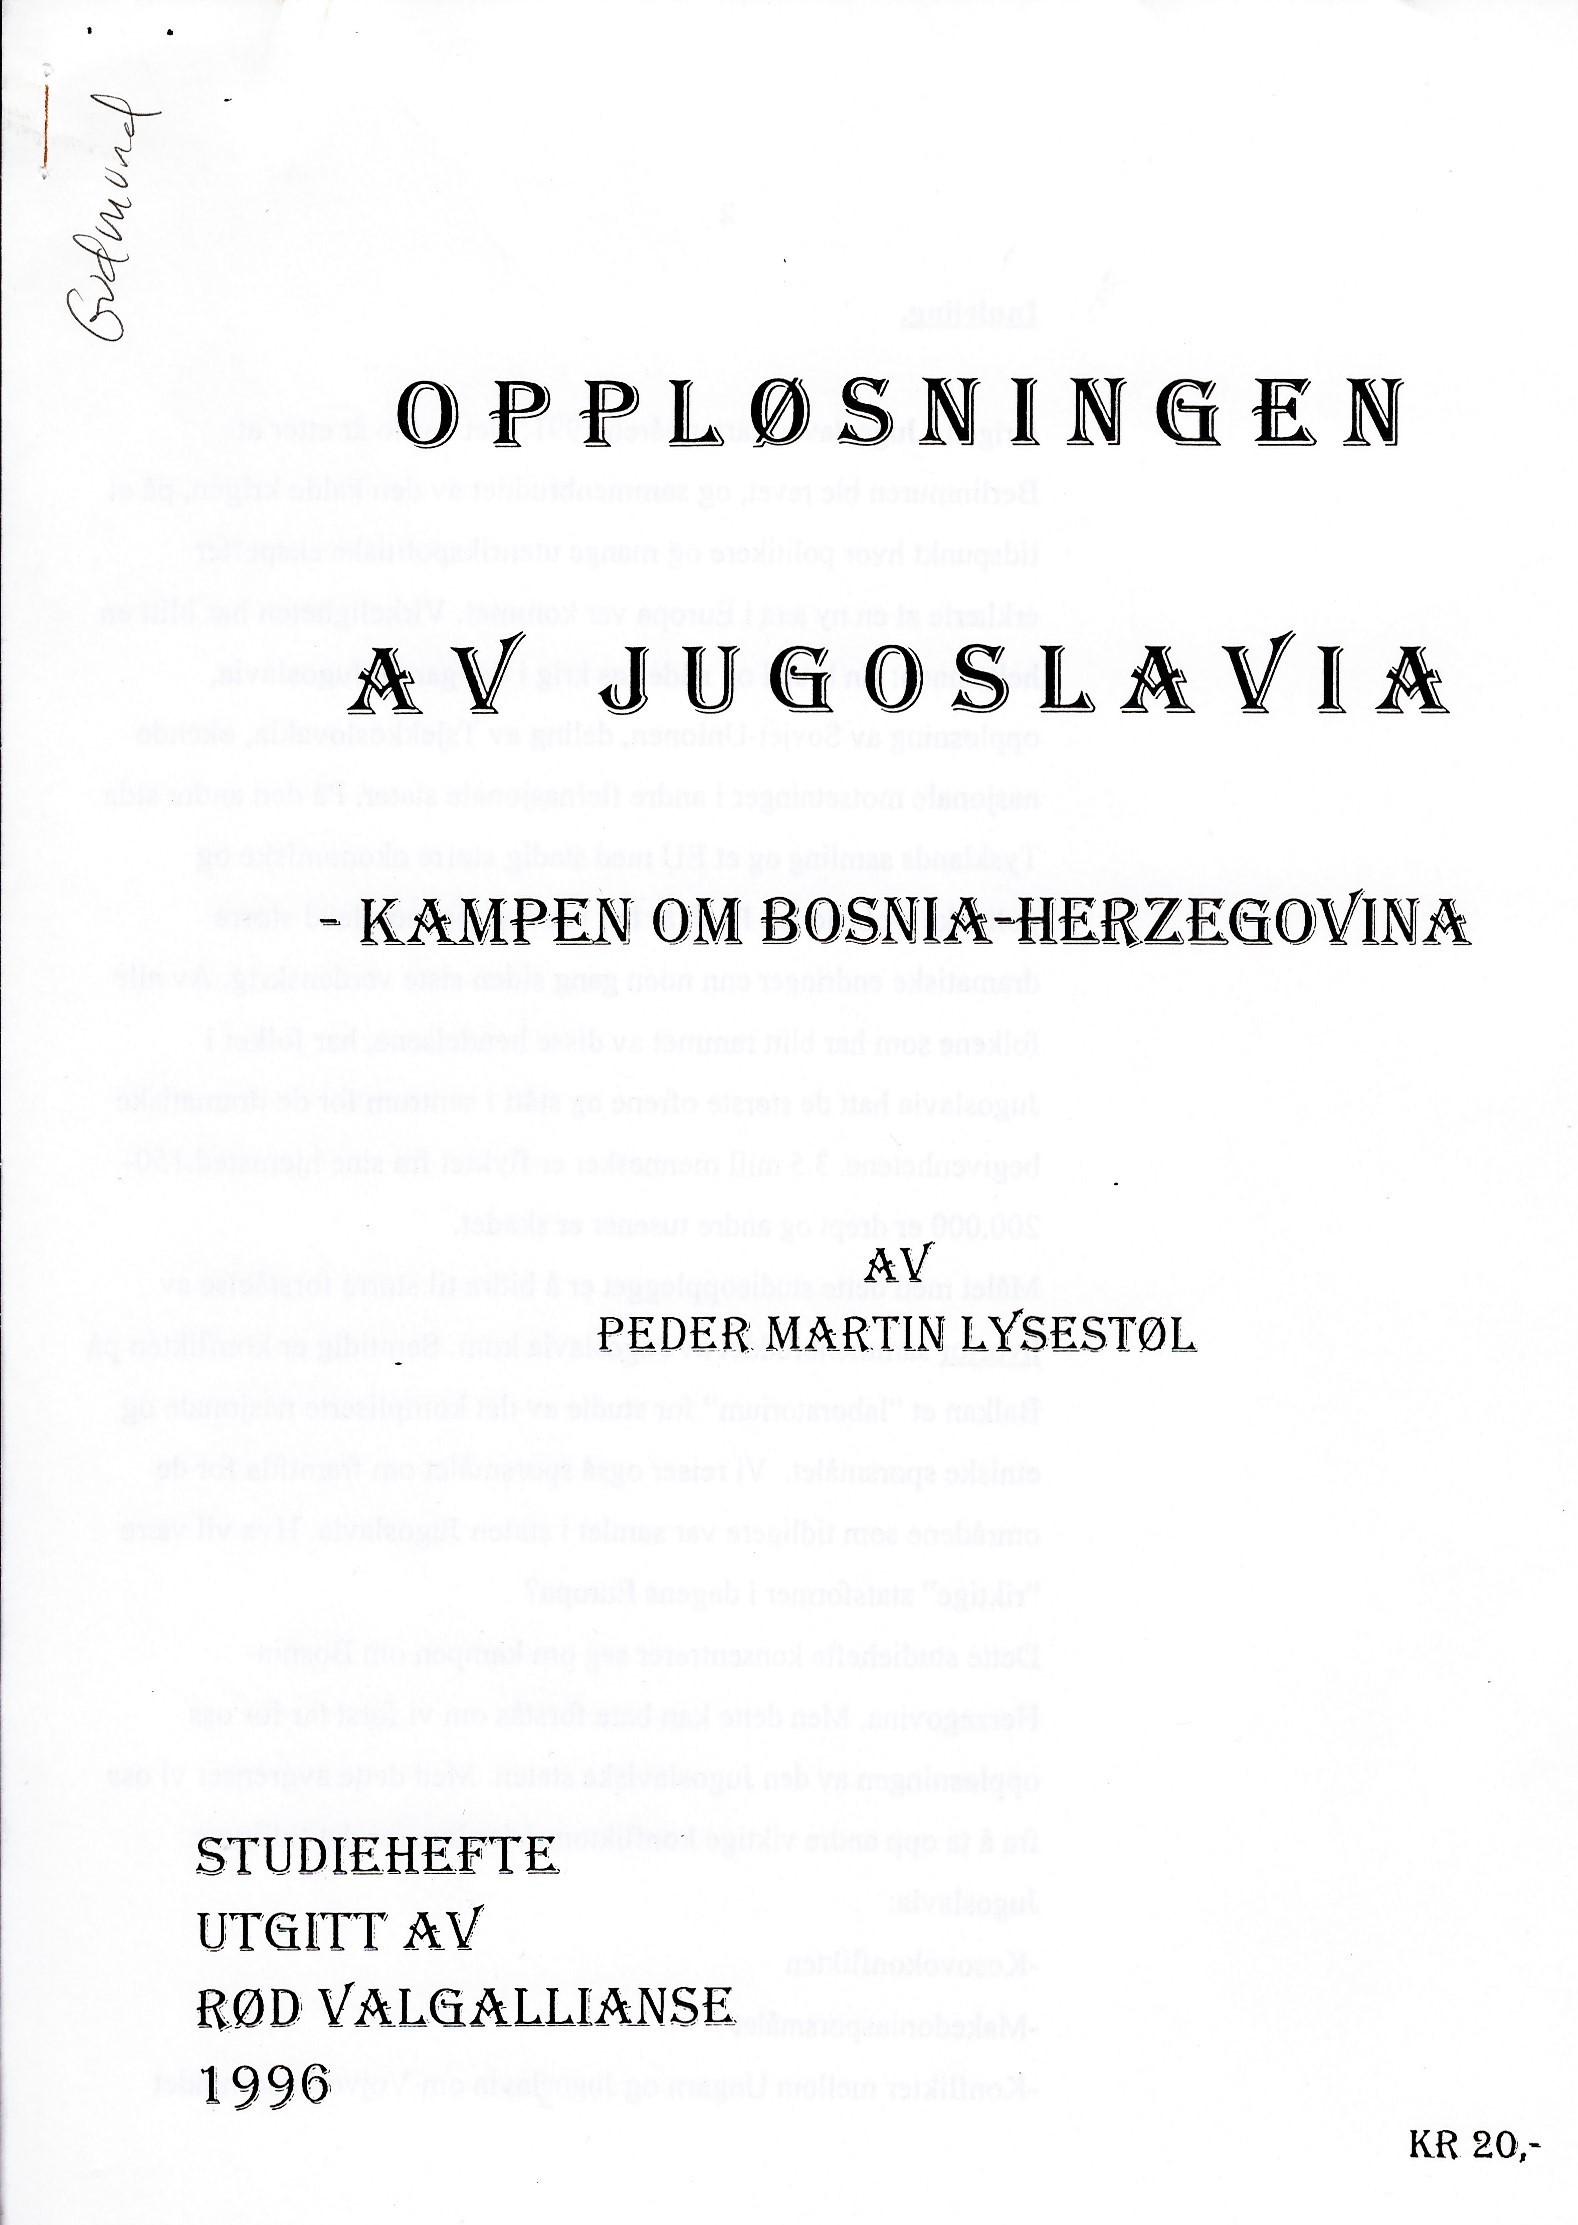 Oppløsningen av Jugoslavia - kampen om Bosnia-Herzegovina